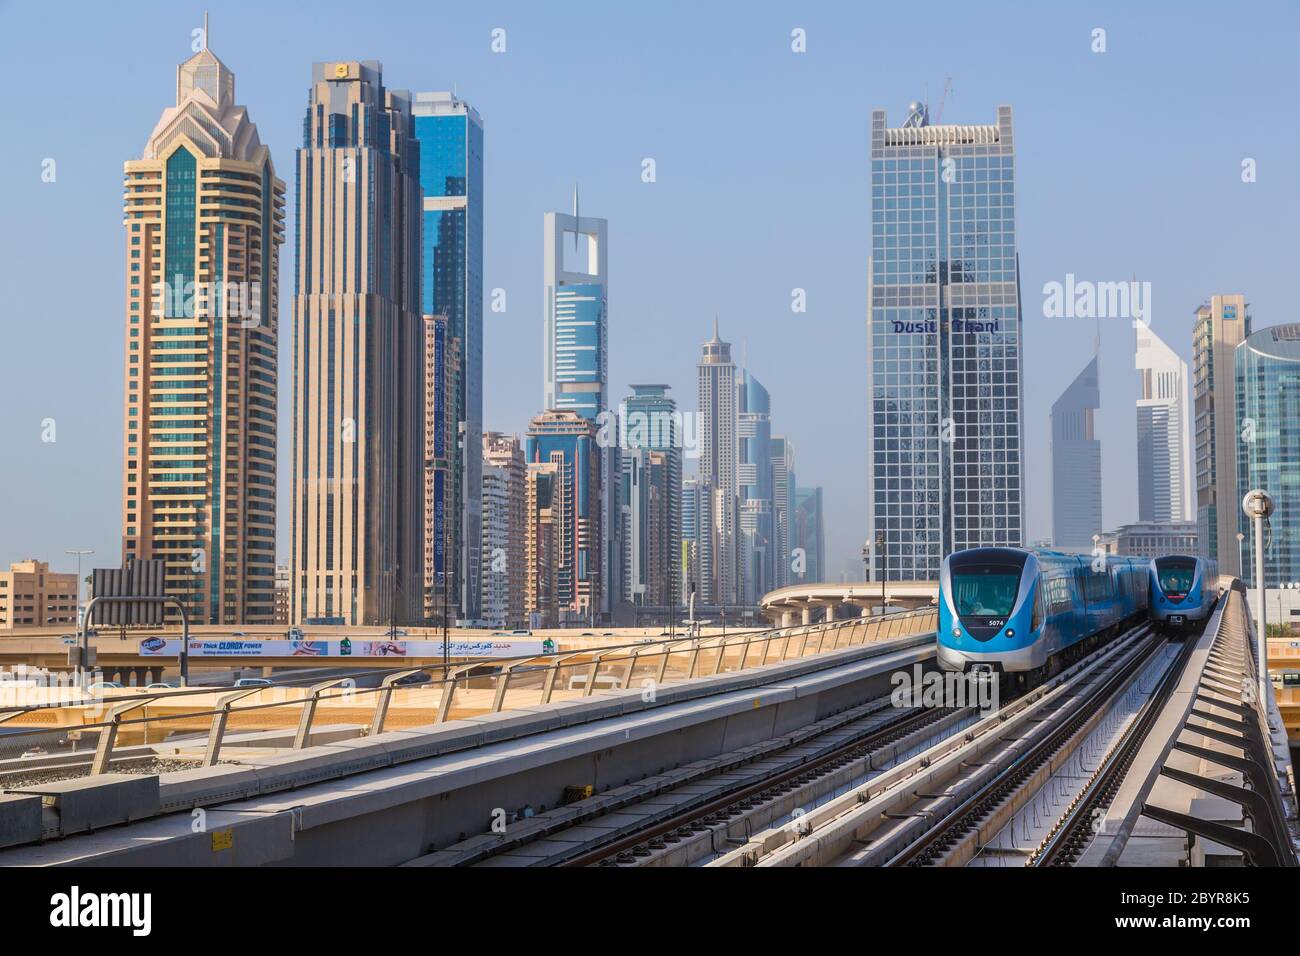 Dubai metro railway Stock Photo